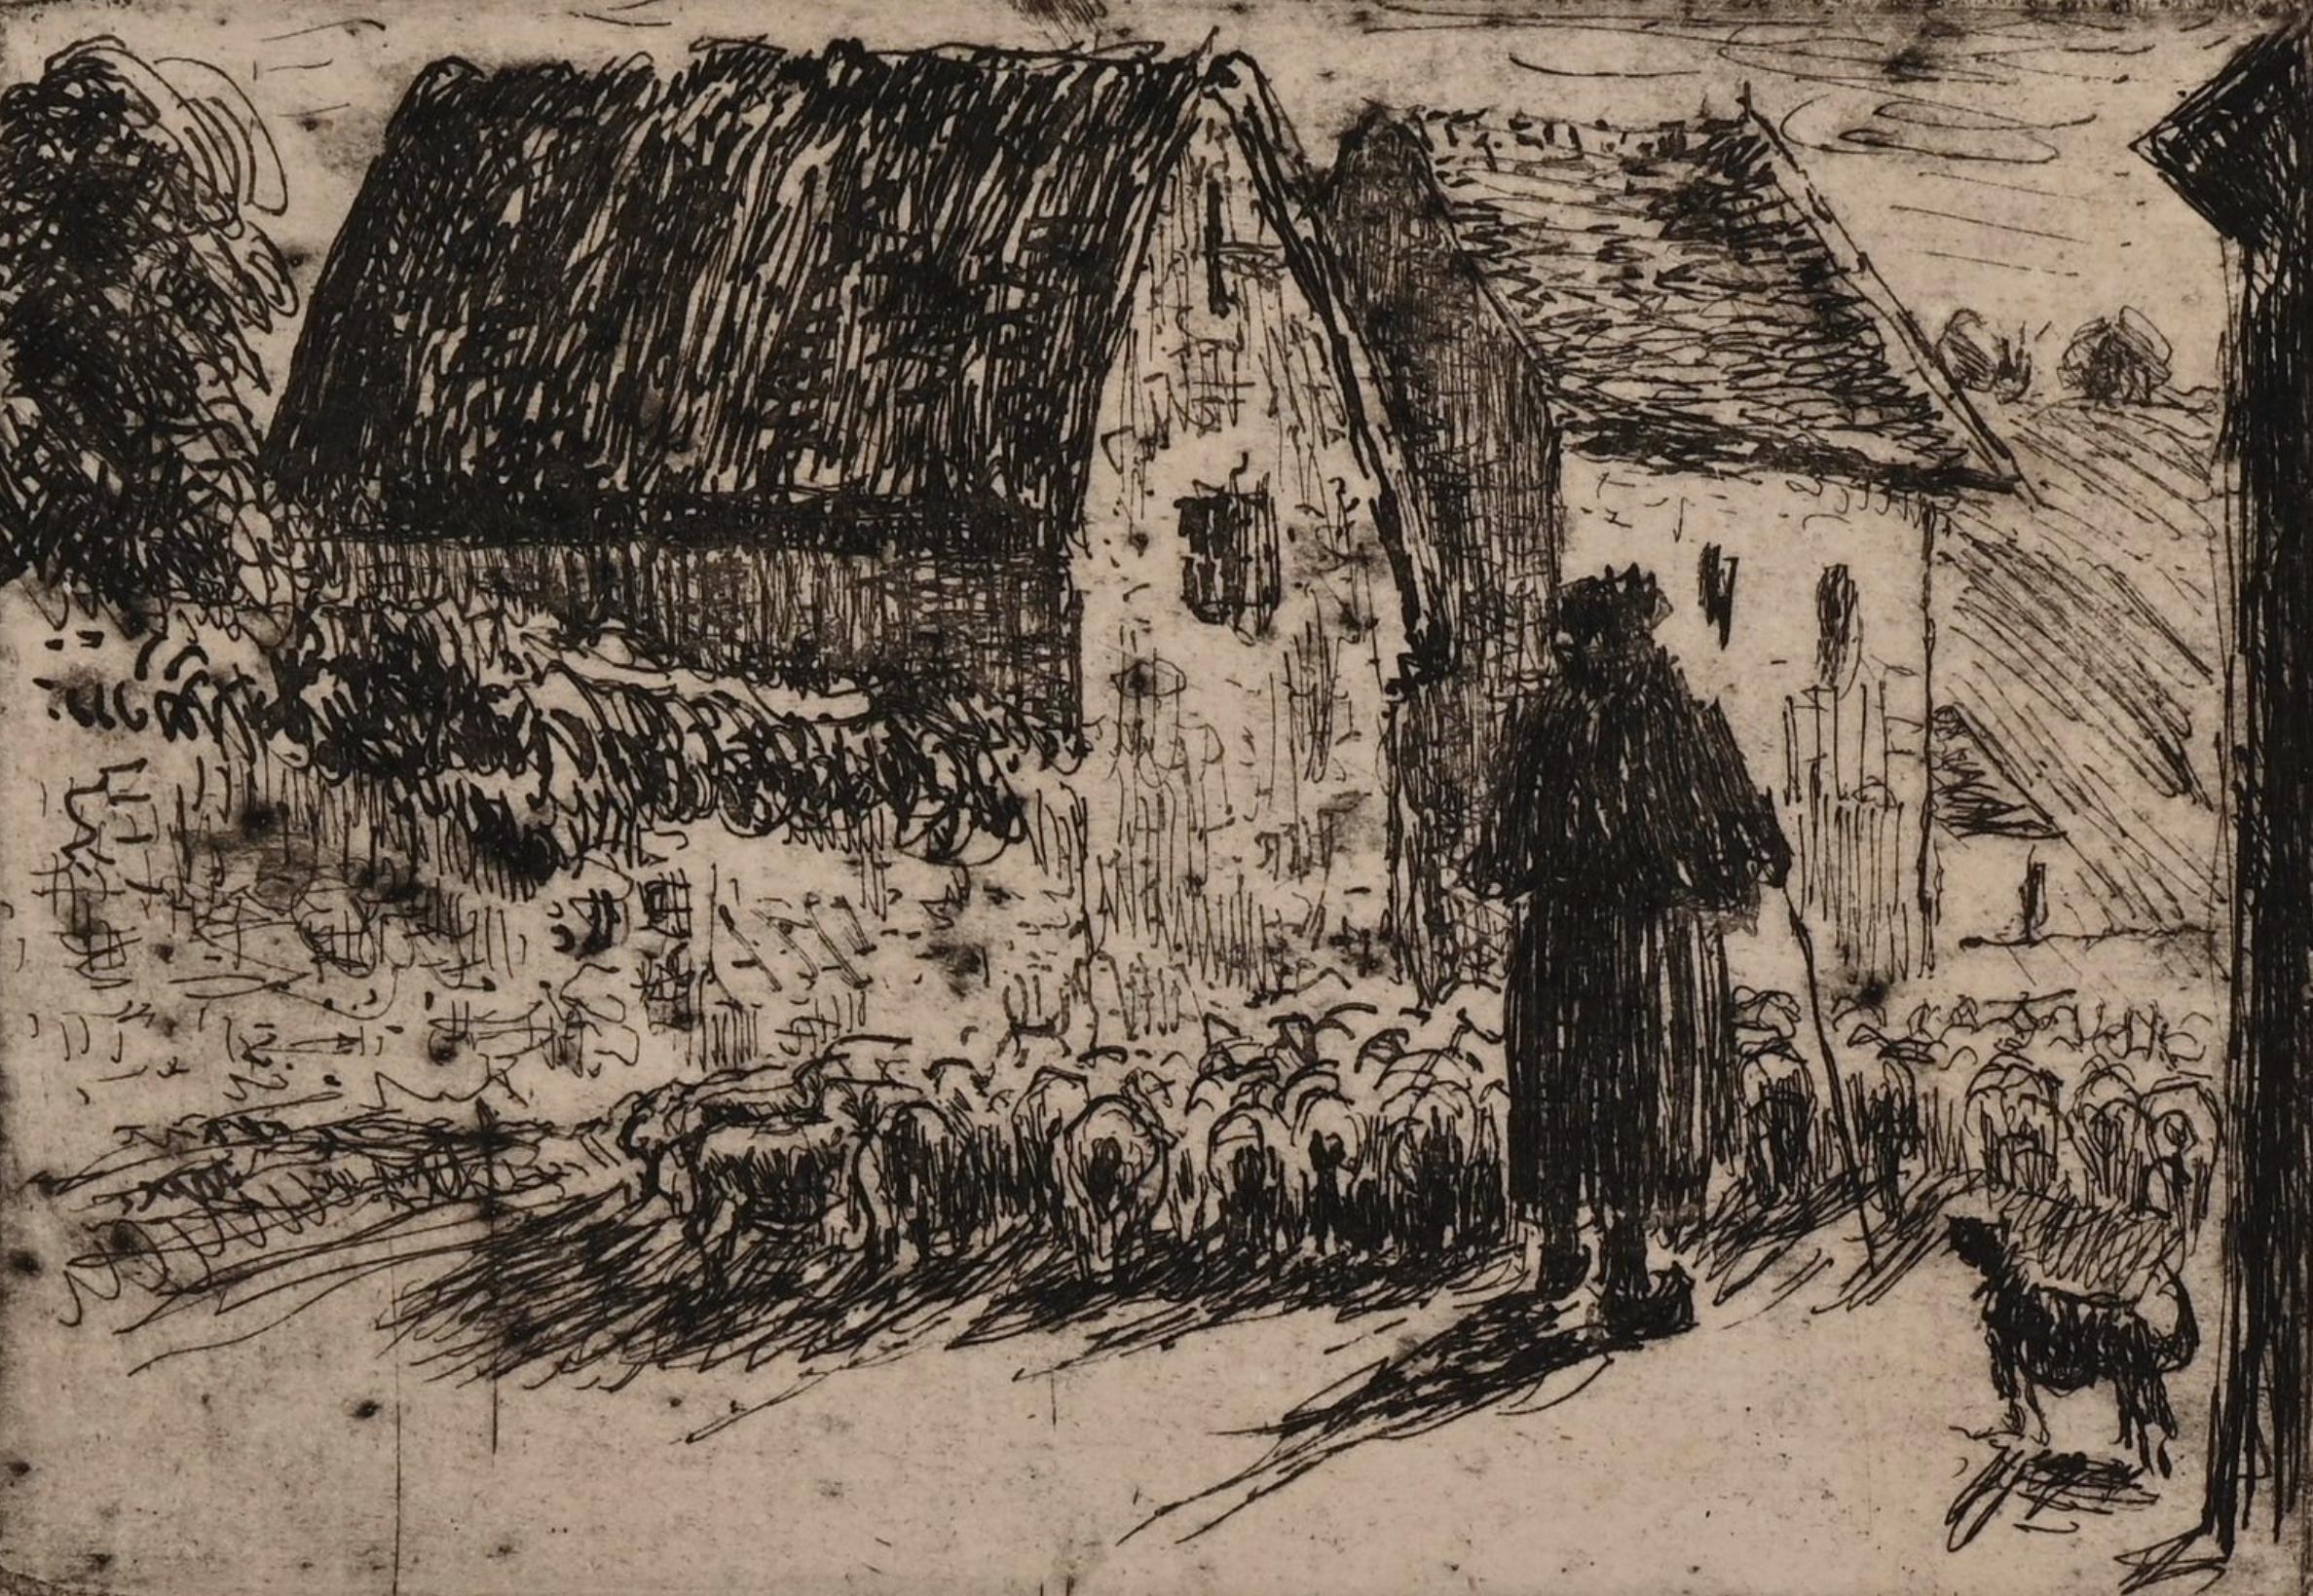 La rentrée du Berger von Camille Pissarro (1830-1903)
Ätzen
7,6 x 10,9 cm (3 x 4 ¹/₄ Zoll)
Links unten mit den Initialen C.P. und rechts unten mit der Nummer 13/18 gestempelt.
Dieses Werk wurde 1889 geschaffen und später in einer limitierten